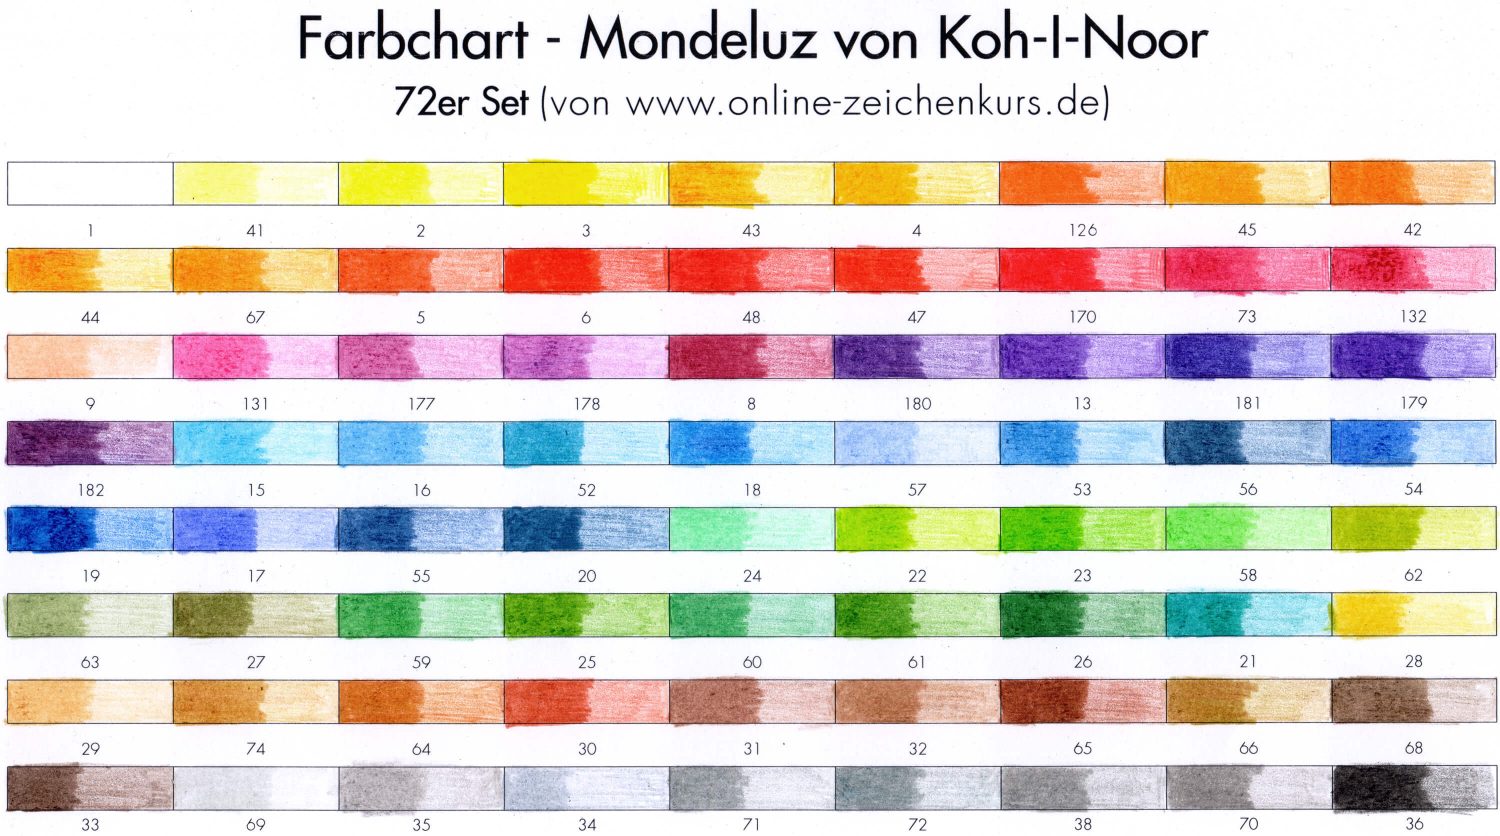 Farbchart Mondeluz von Koh-I-Noor 72er Set ausgefüllt